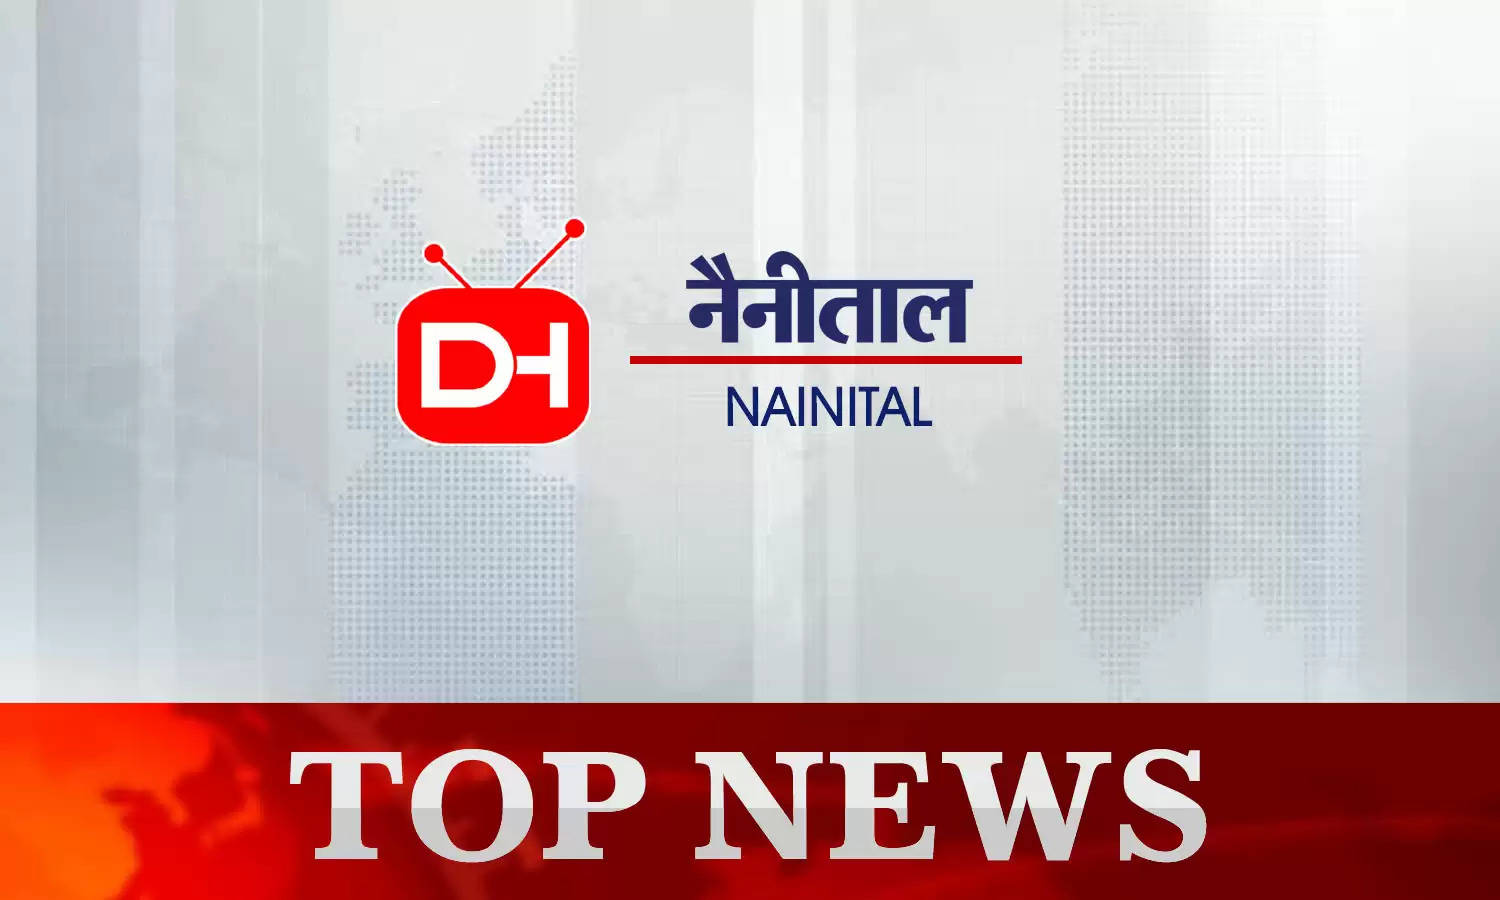 Nainital News Today 18th October 2022 : नैनीताल की दिनभर की छोटी-बड़ी खबरें